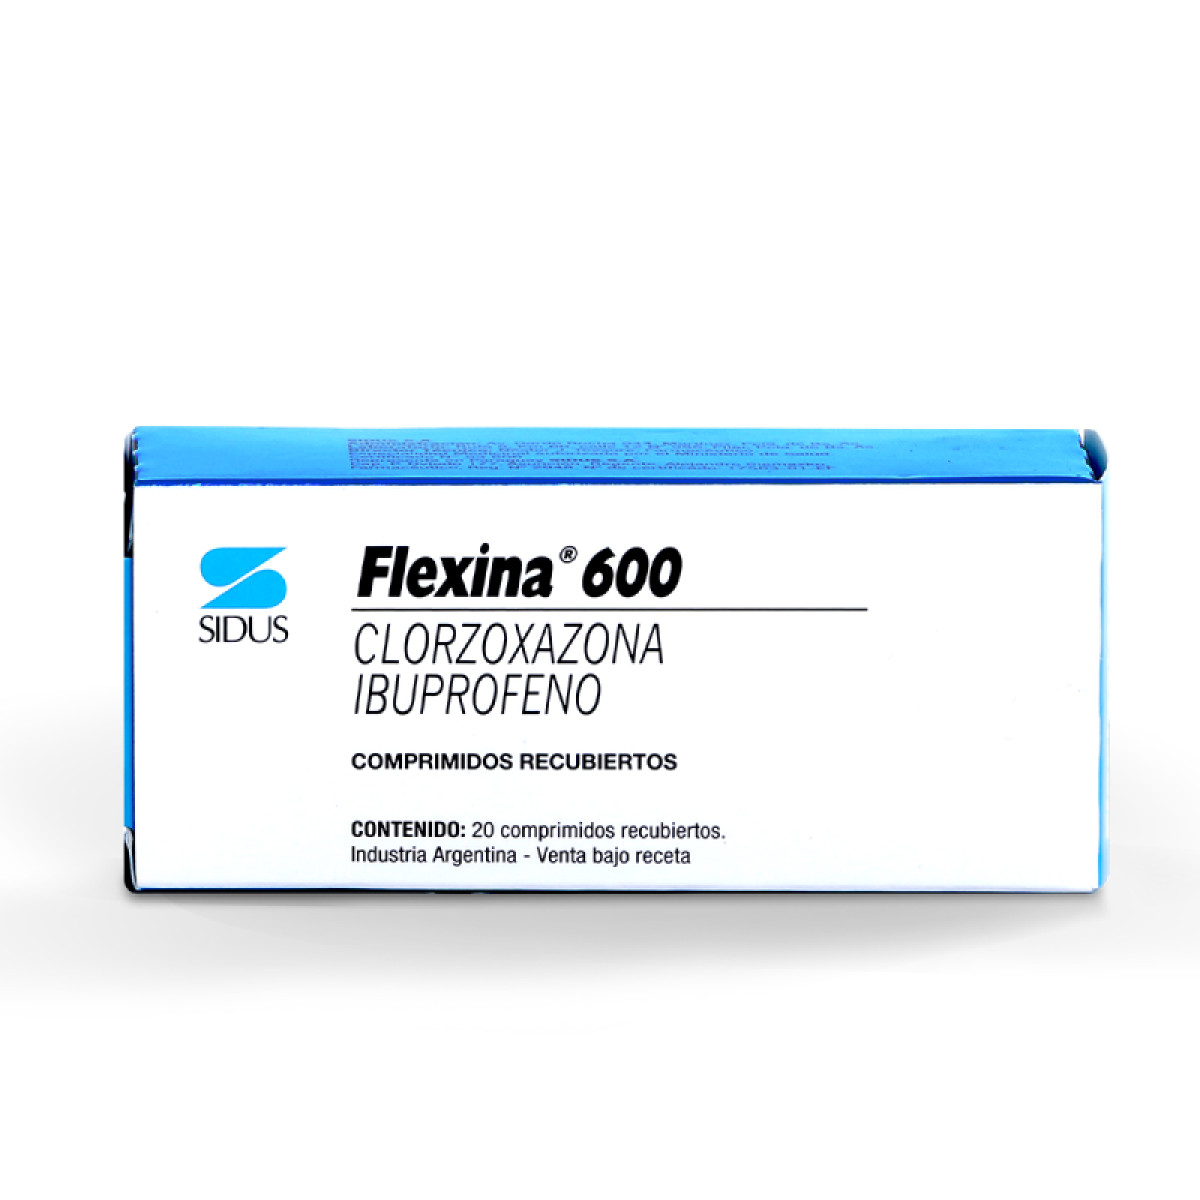 FLEXINA 600 X 20 COMP RECUB